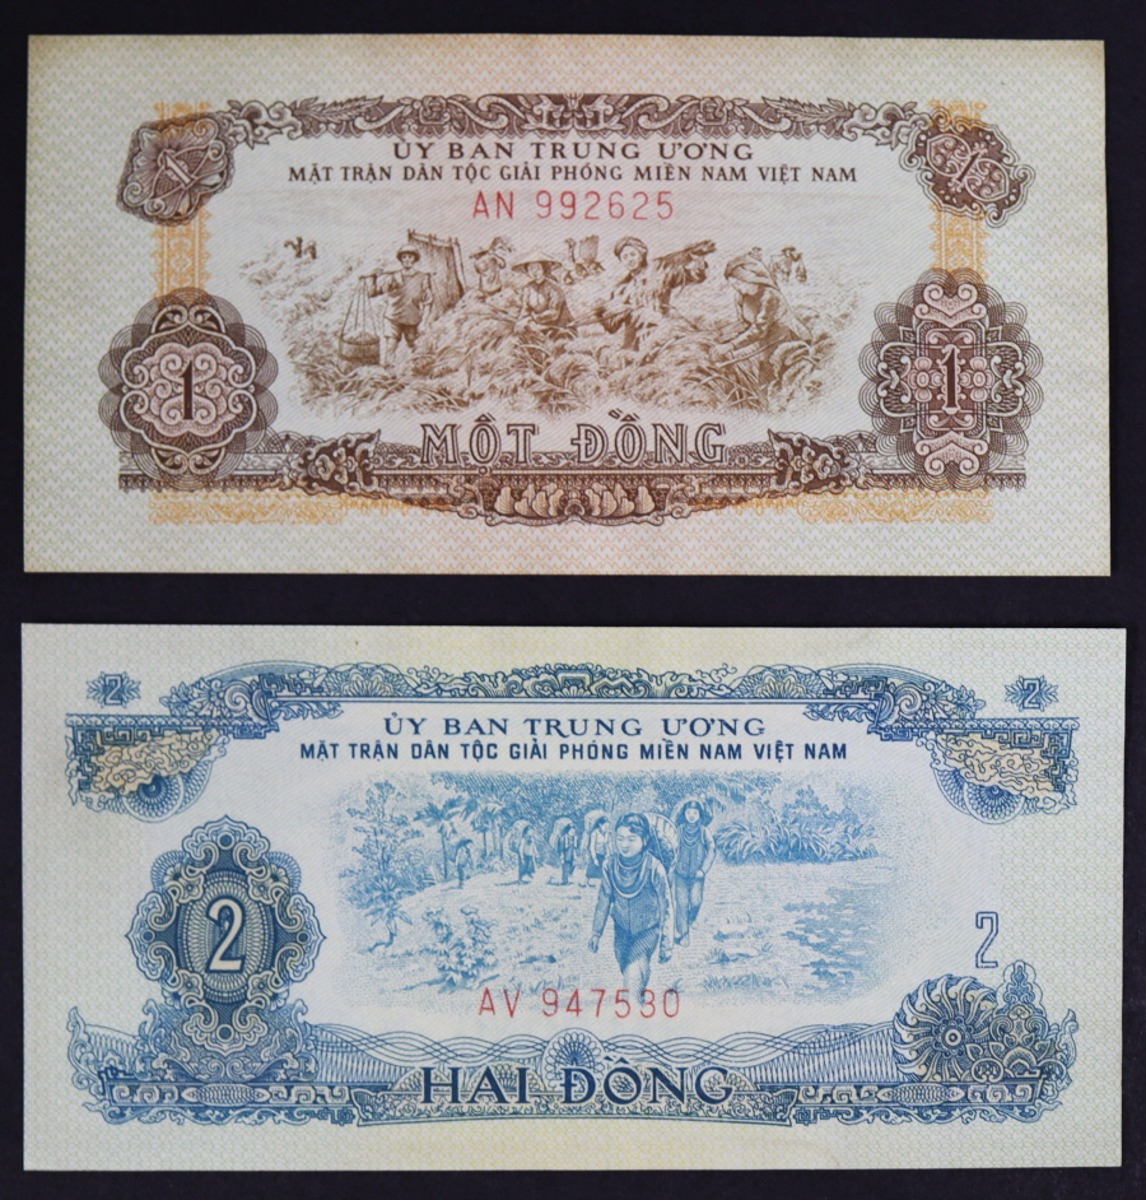 베트남 1963년 구권 지폐 2종 세트 (1, 2동) 미사용